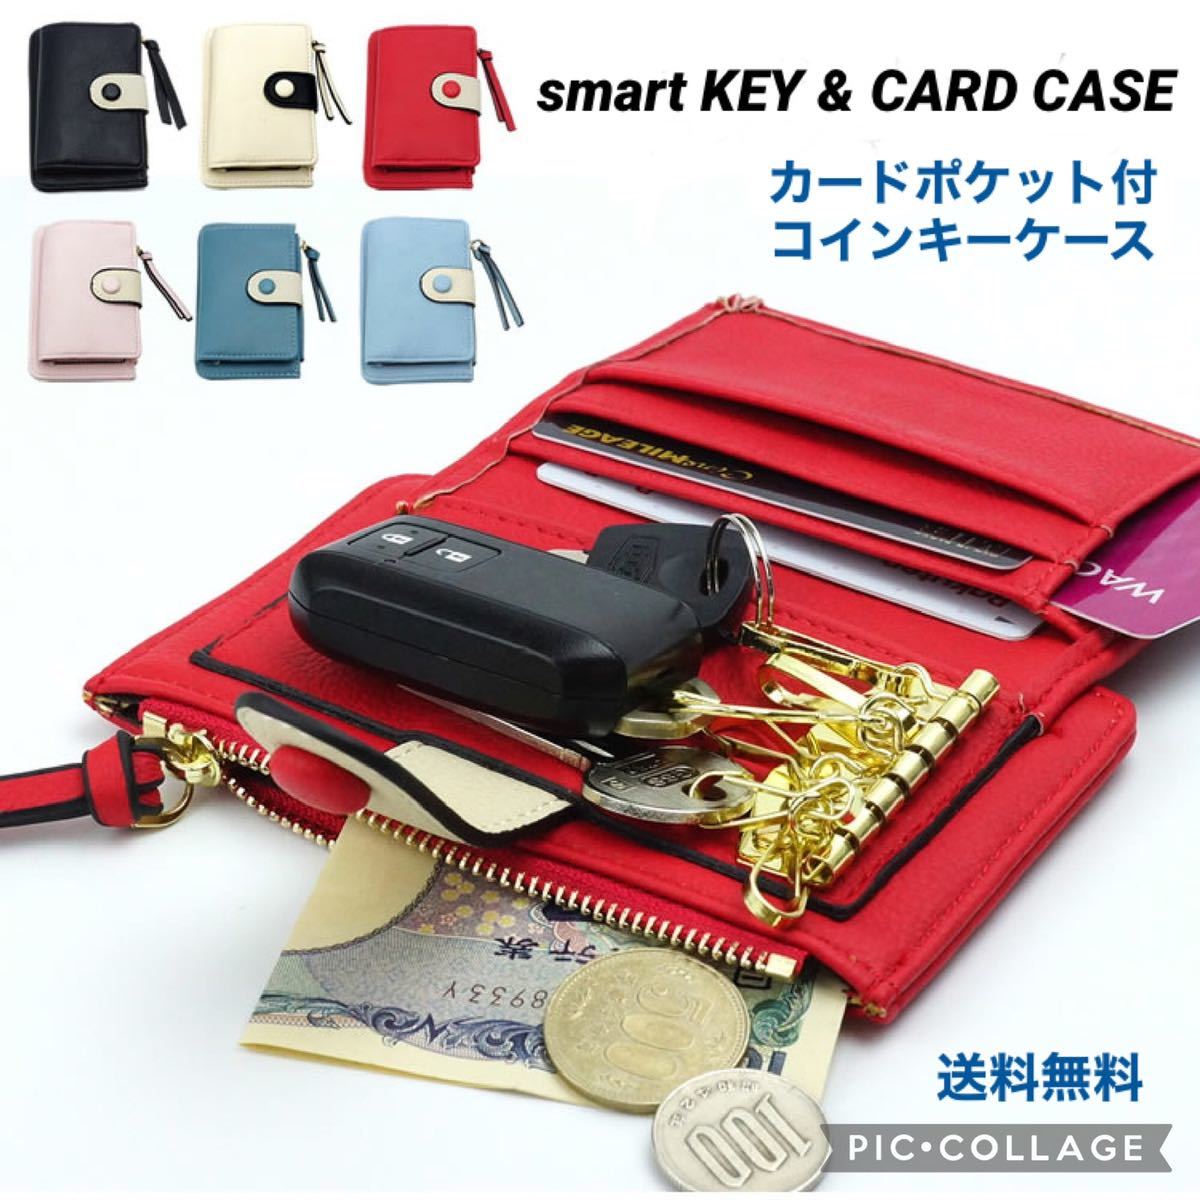 ■多機能 キーケース【アプリコット】カード コイン 財布 キーホルダー